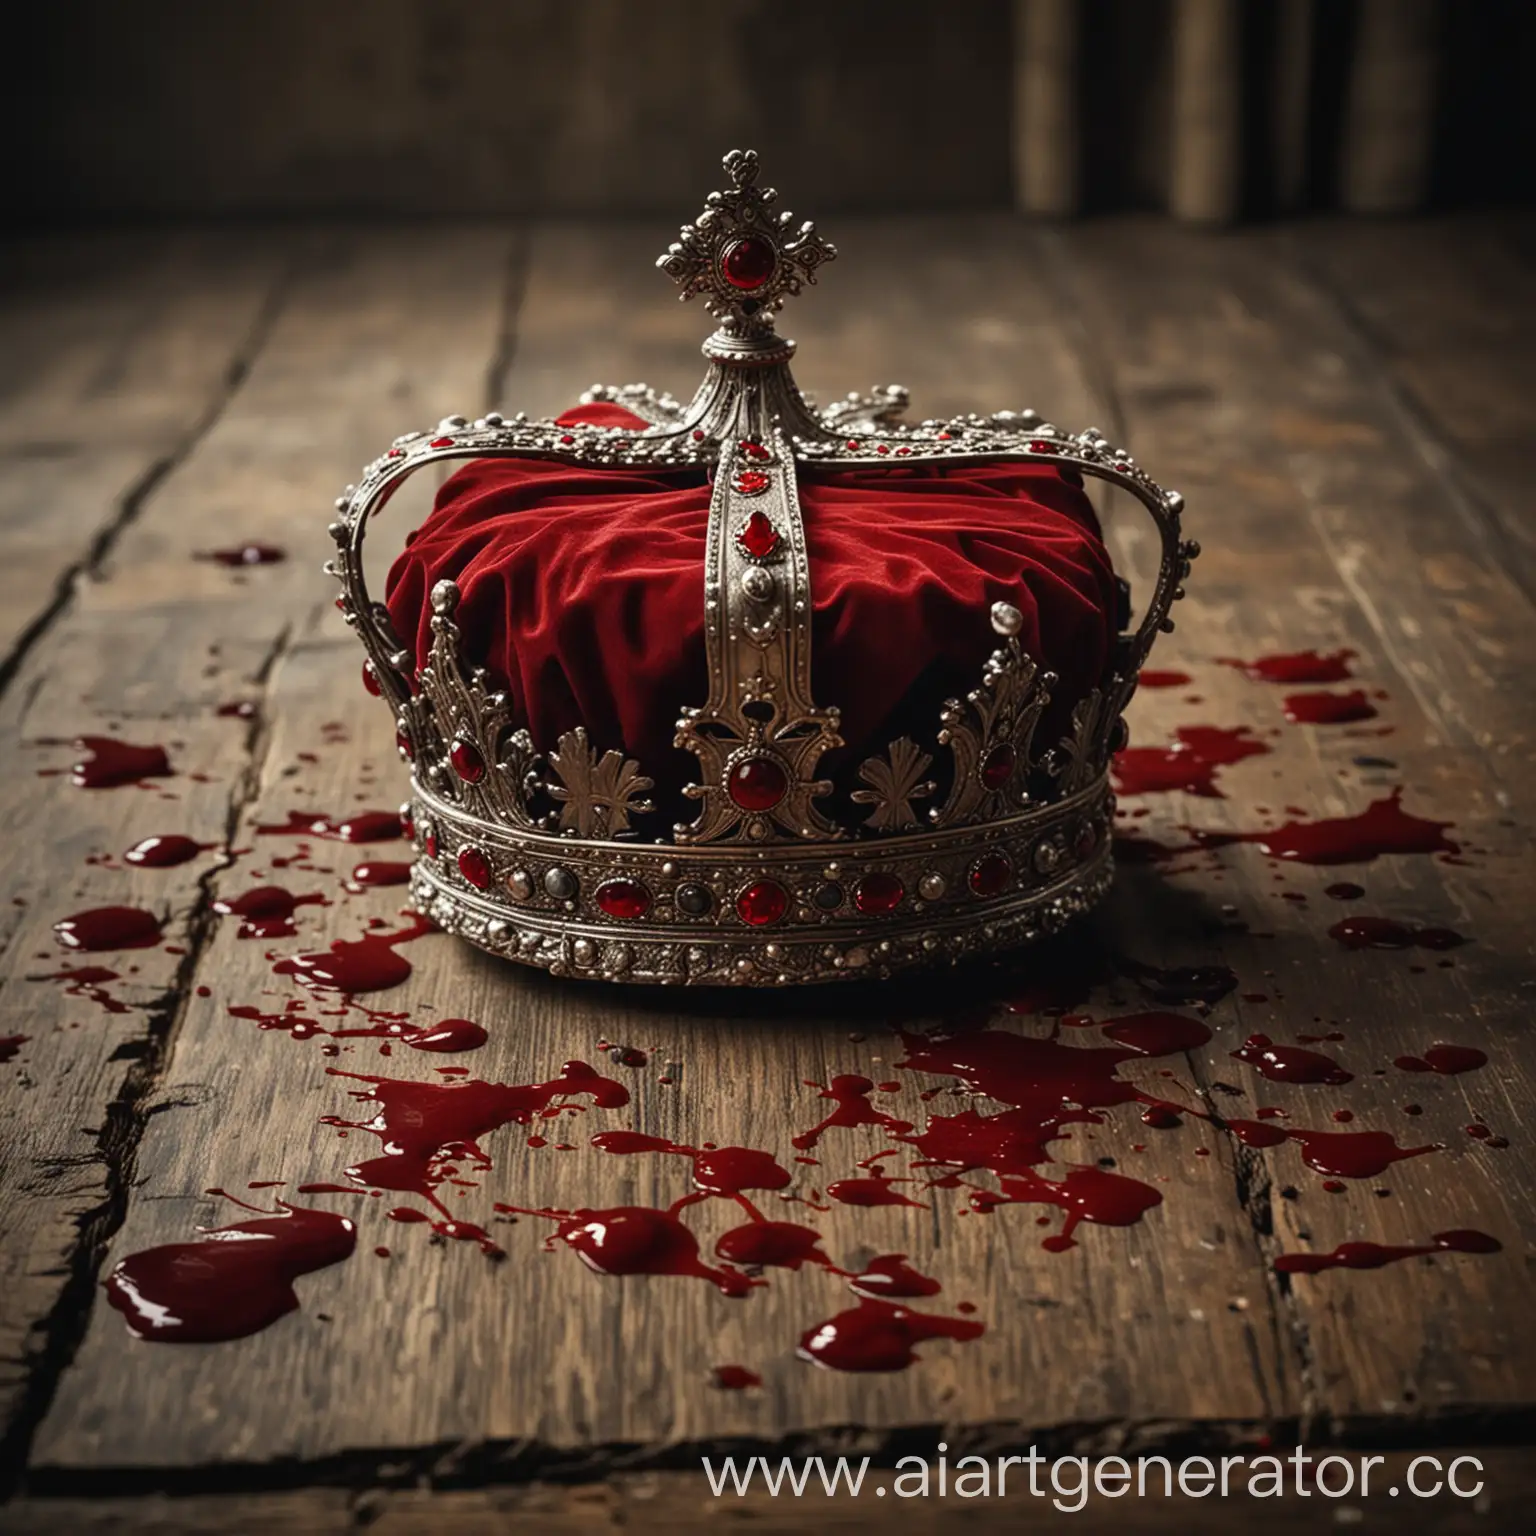 Королевская корона в крови лежит на столе